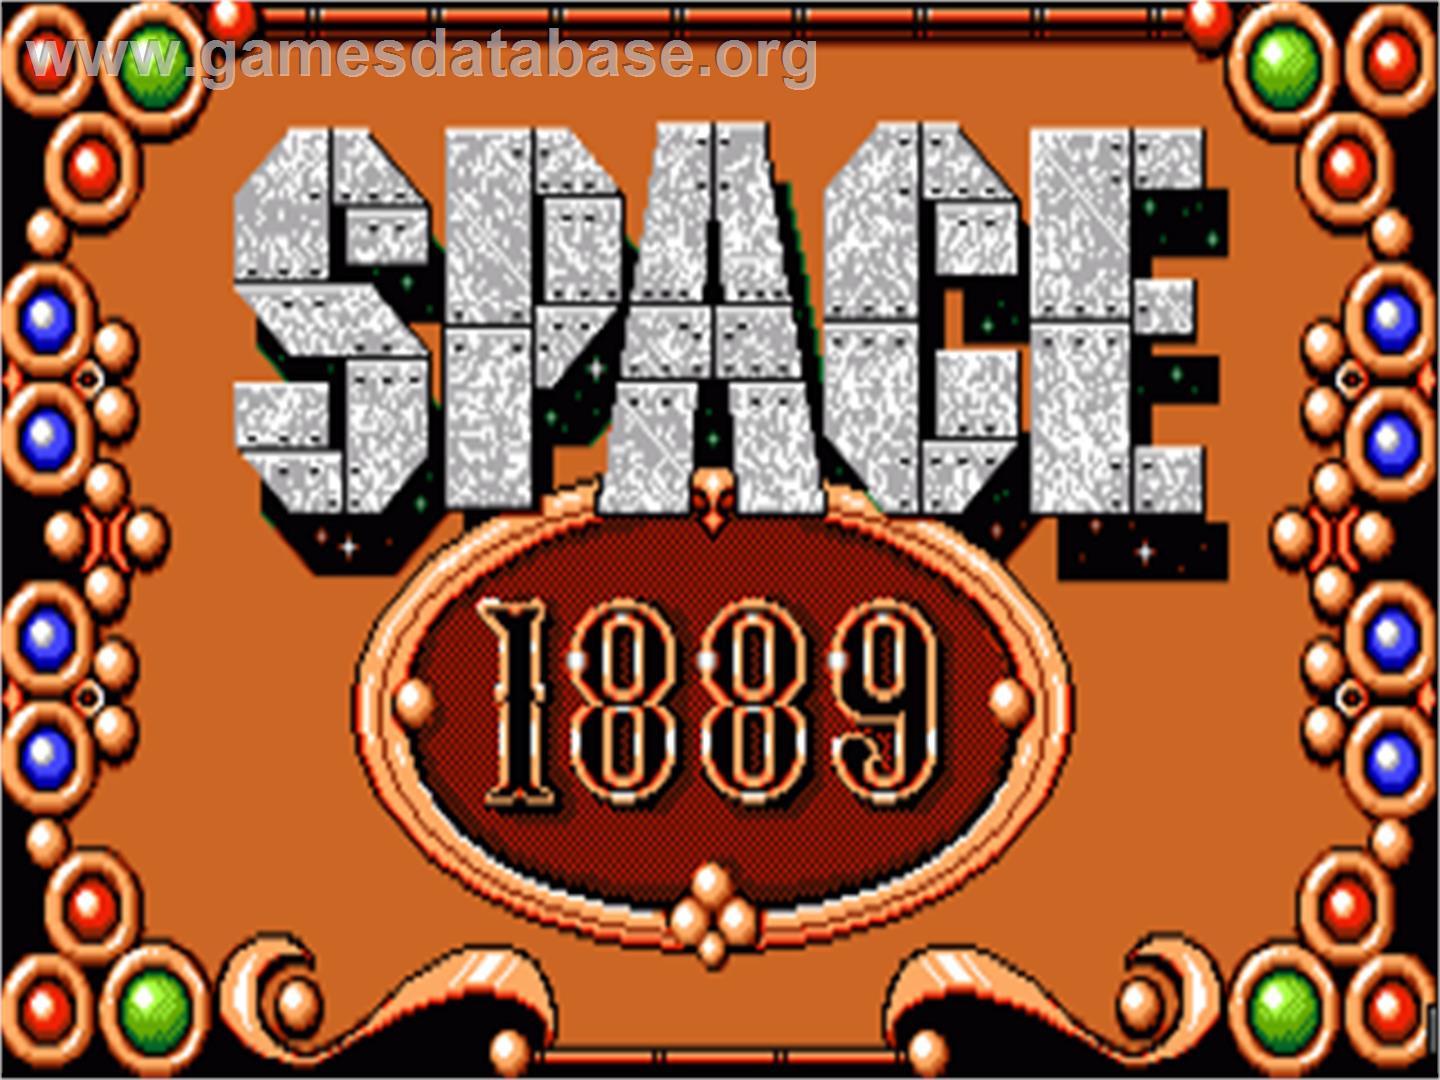 Space 1889 - Commodore Amiga - Artwork - Title Screen